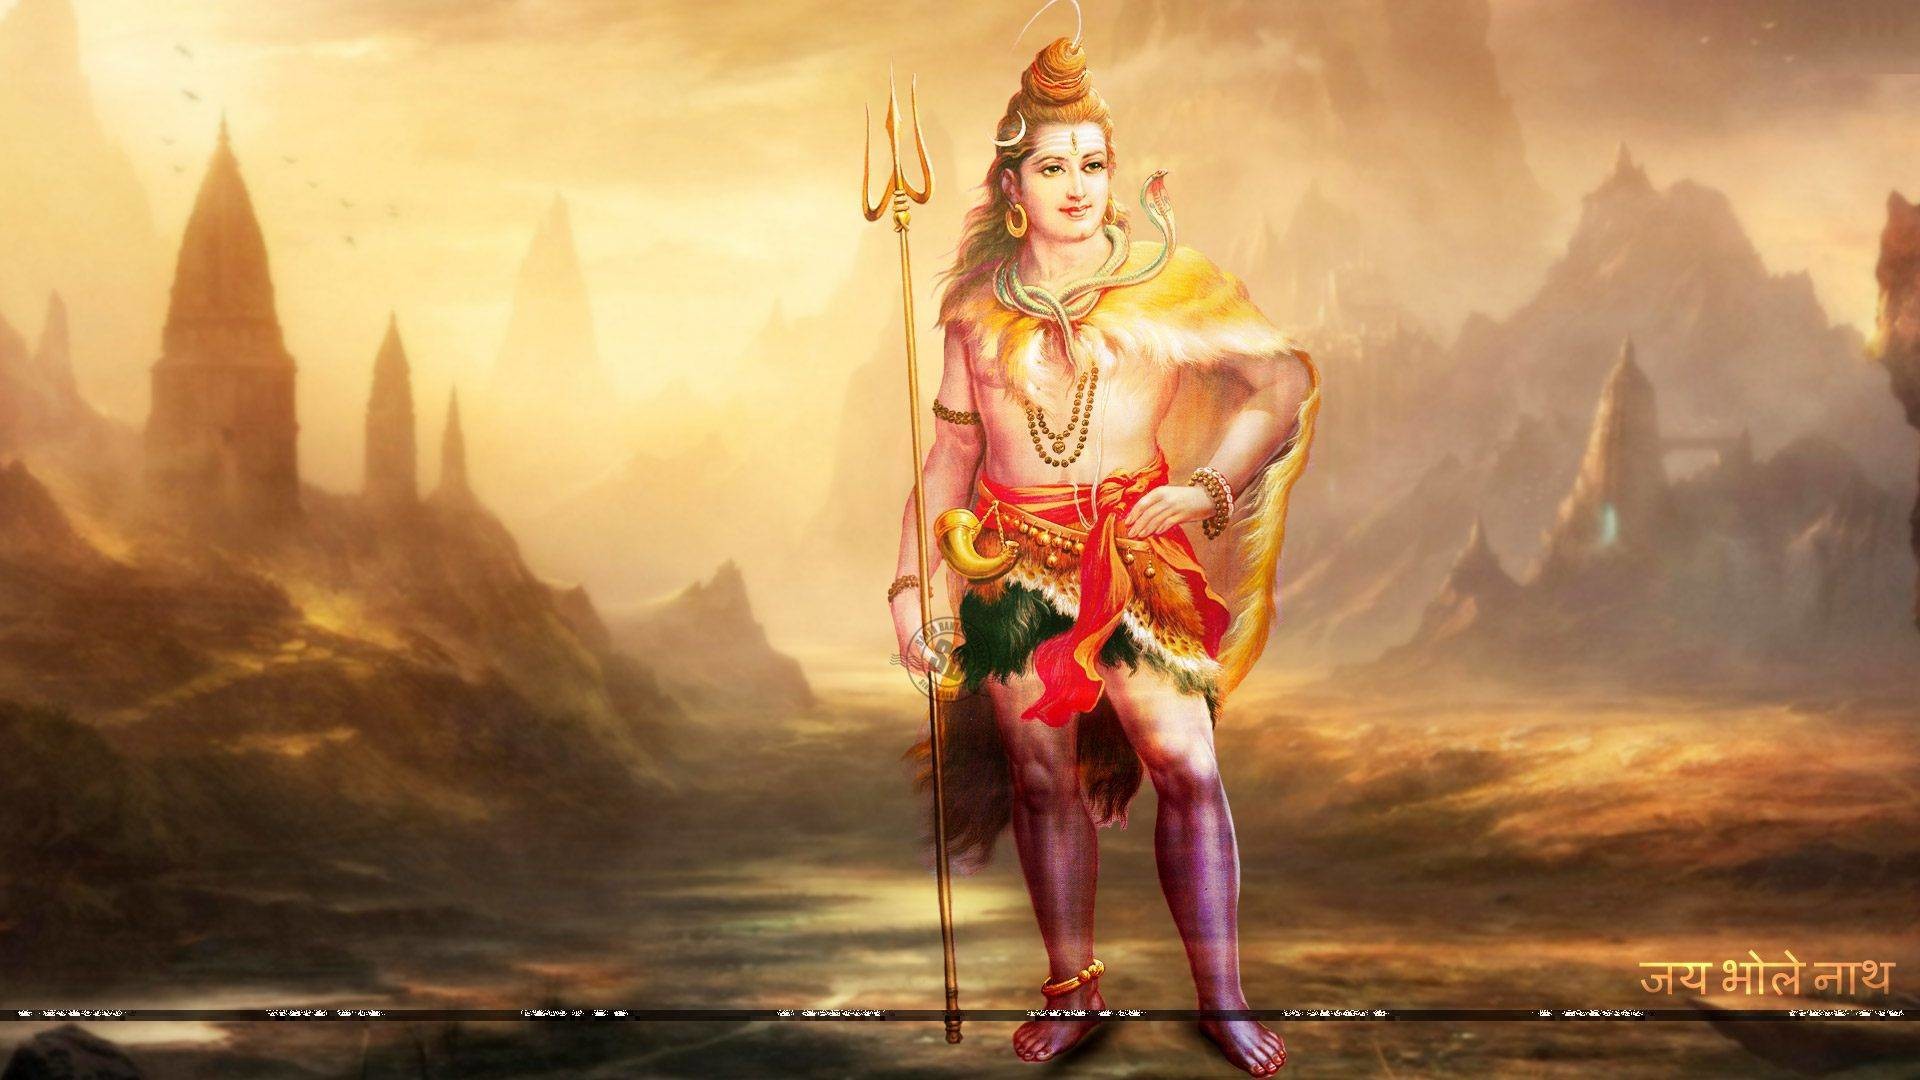 dieu hindou fond d'écran hd 1920x1080,oeuvre de cg,mythologie,illustration,art,personnage fictif